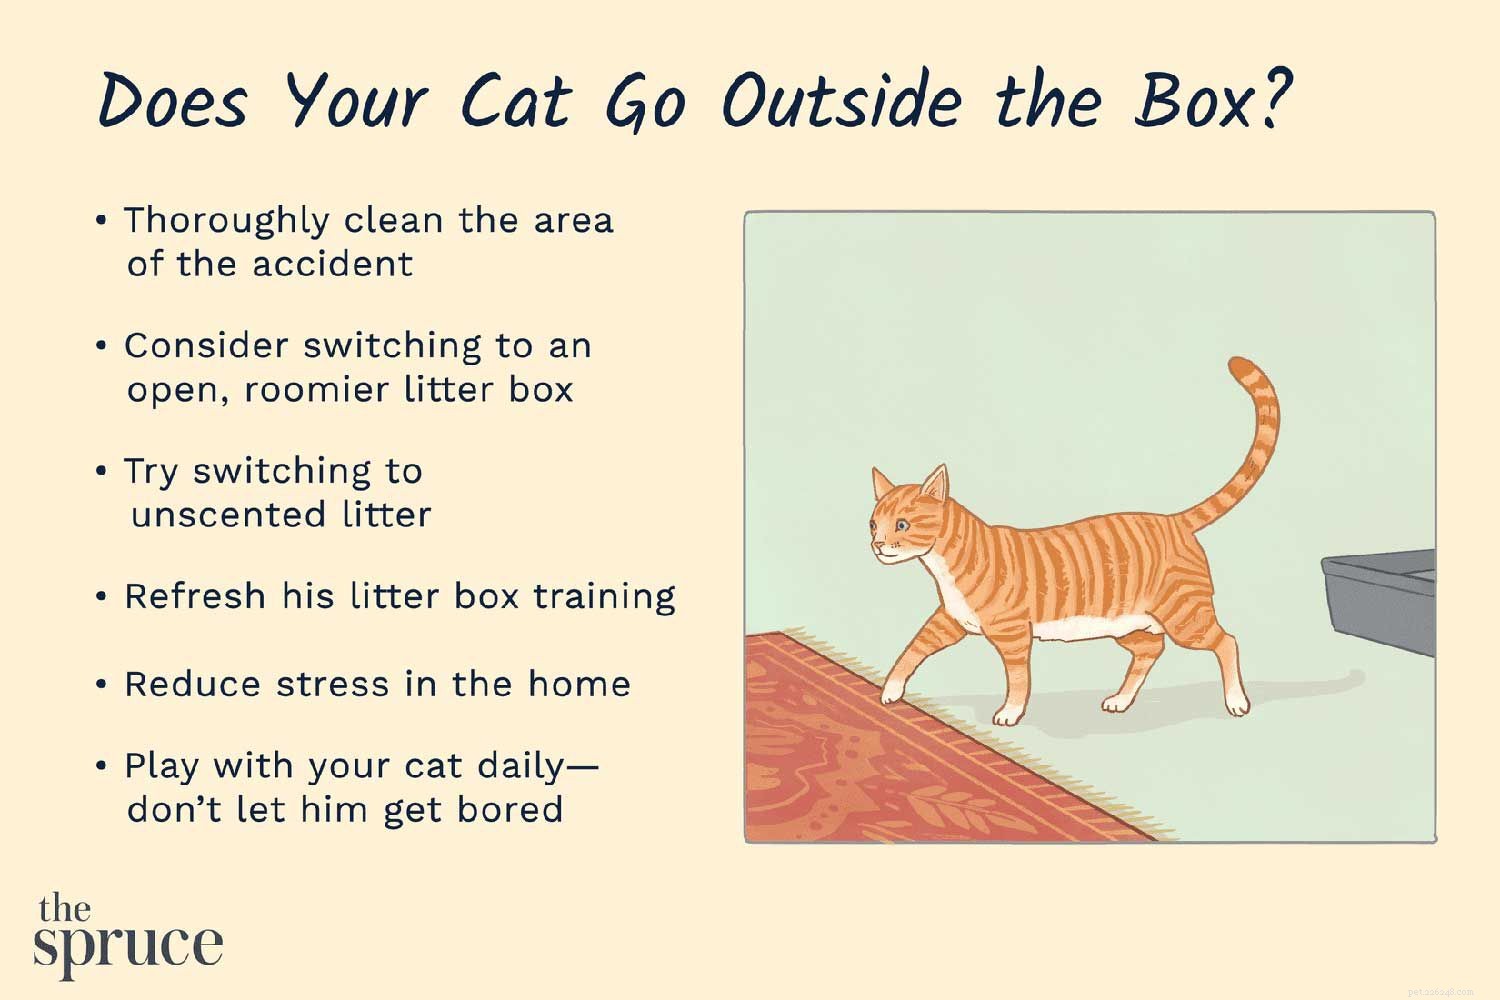 Comment empêcher les chats de faire caca sur les tapis